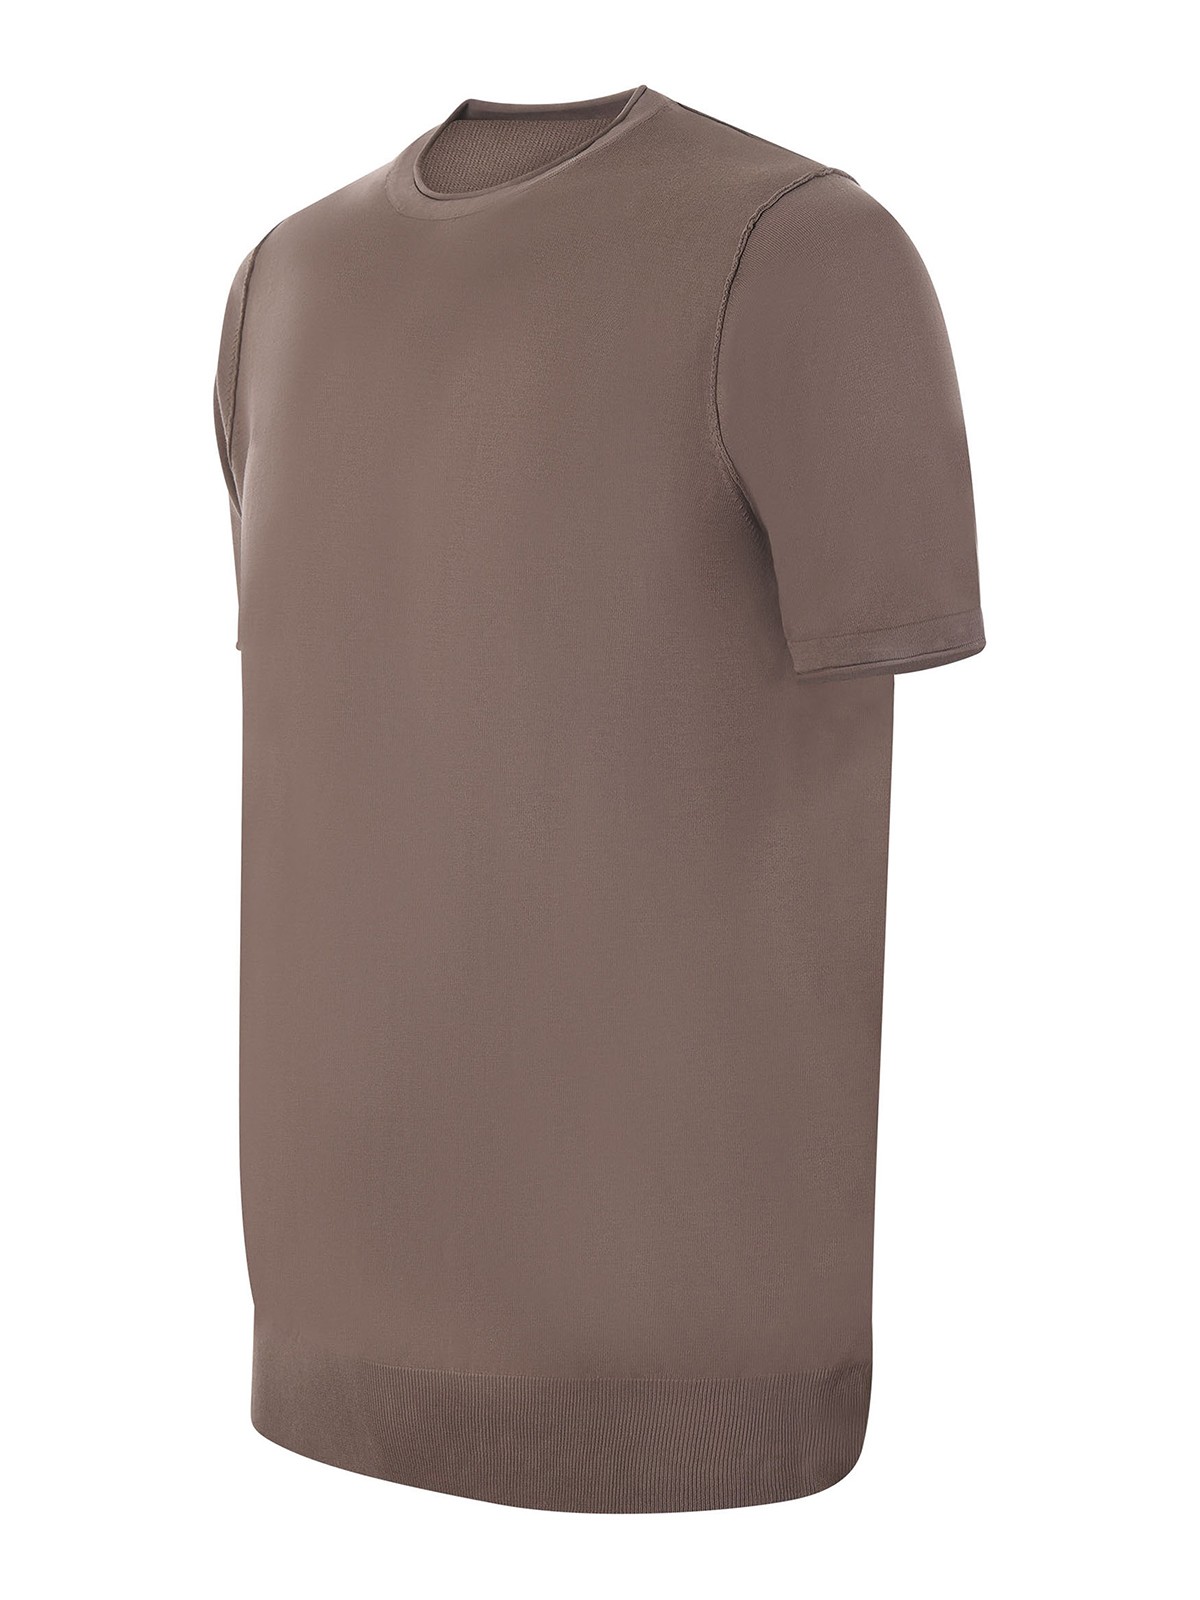 Shop Jeordie's Camiseta - Marrón In Brown